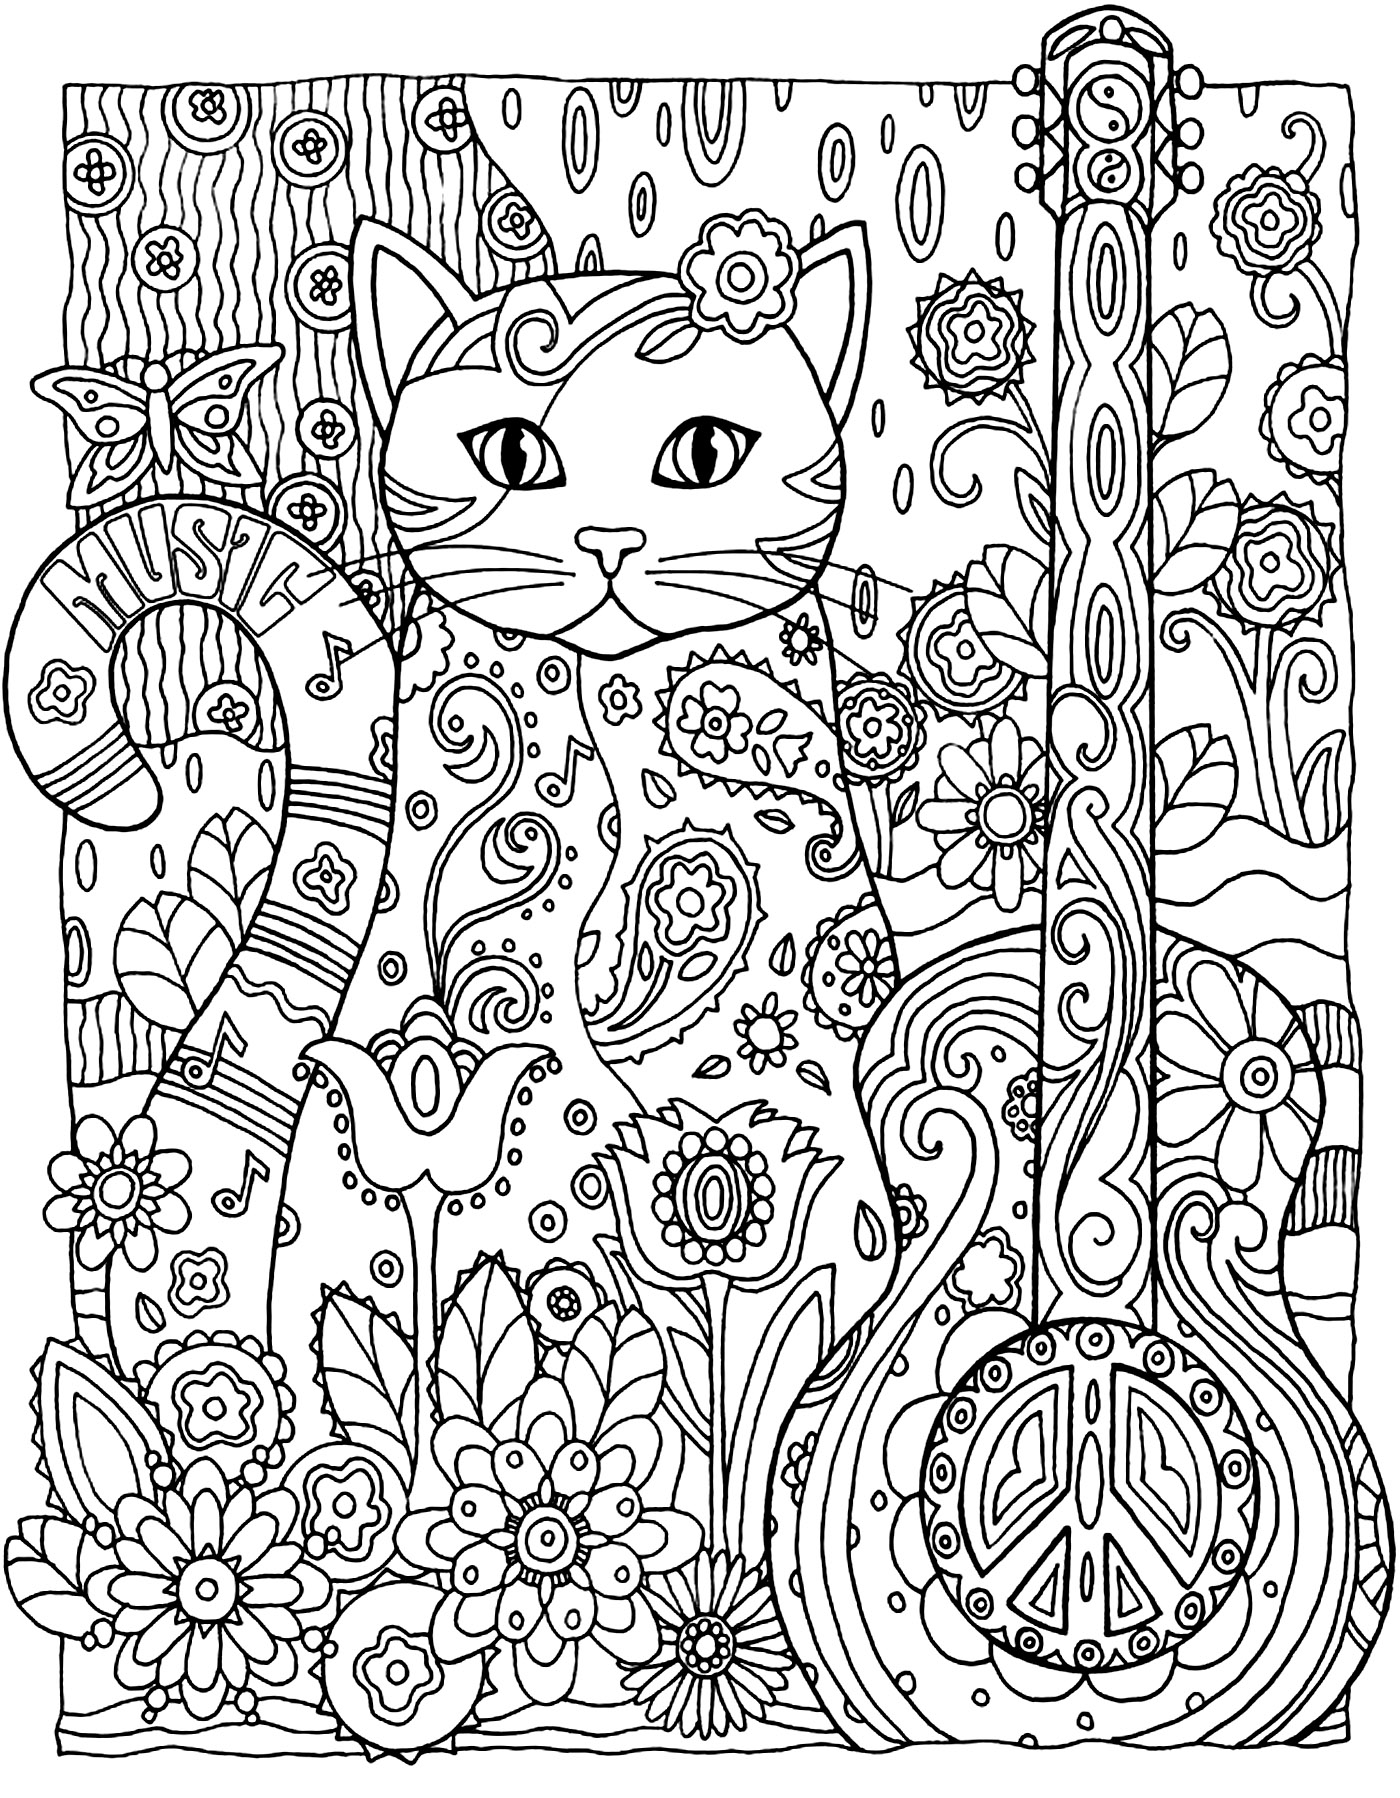 Desenhos para colorir gratuitos de Gatos para imprimir - Gatos